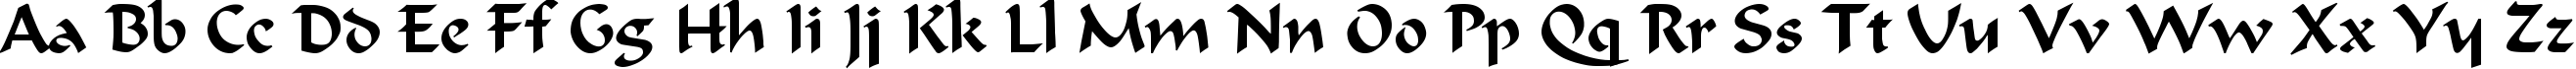 Пример написания английского алфавита шрифтом Calligraphic Regular